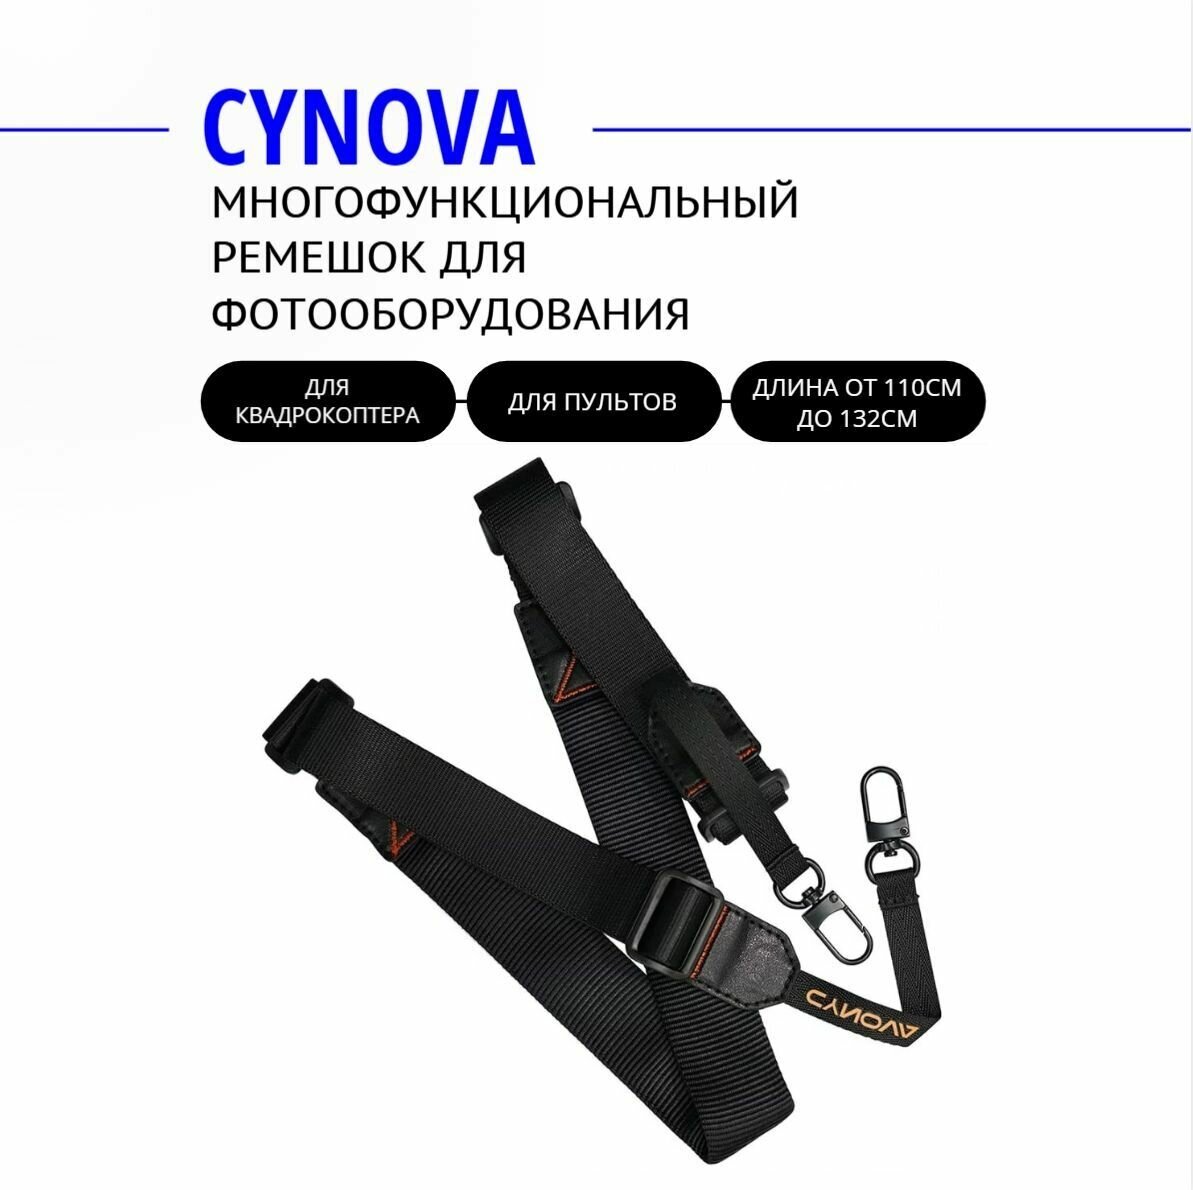 Многофункциональный ремешок CYNOVA, для фотооборудования и пультов на квадрокоптер